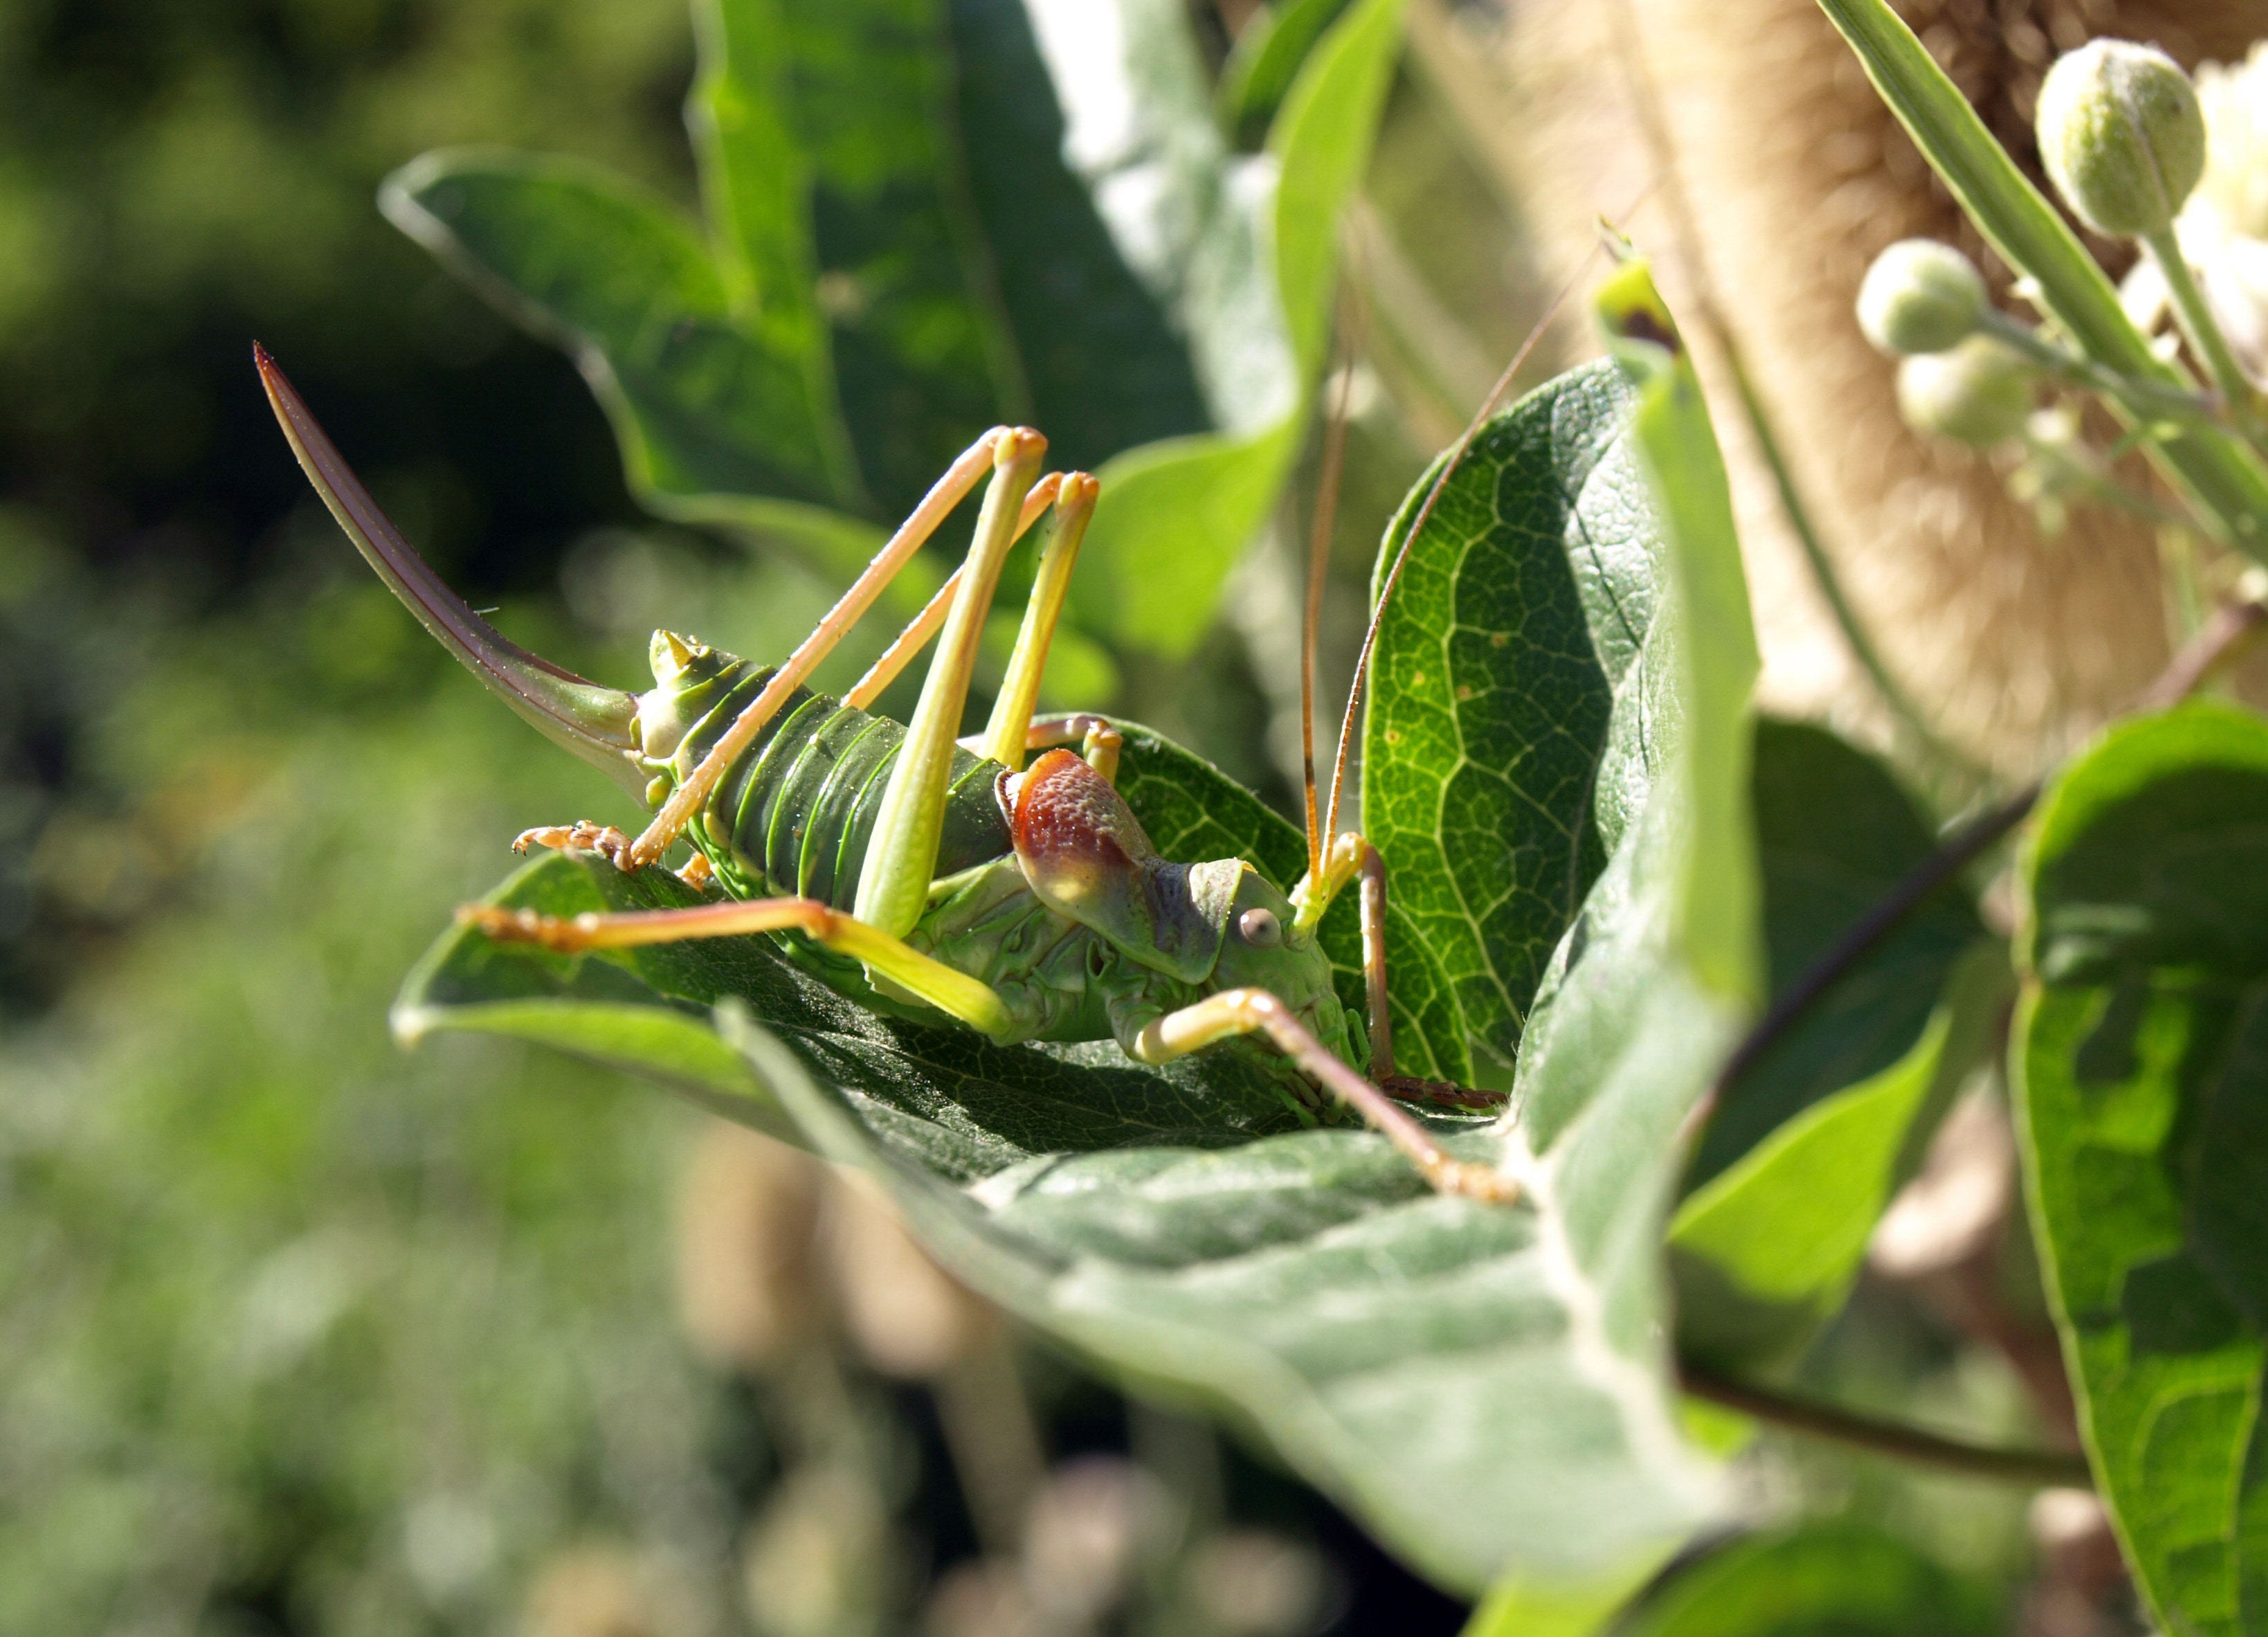 green mormon cricket